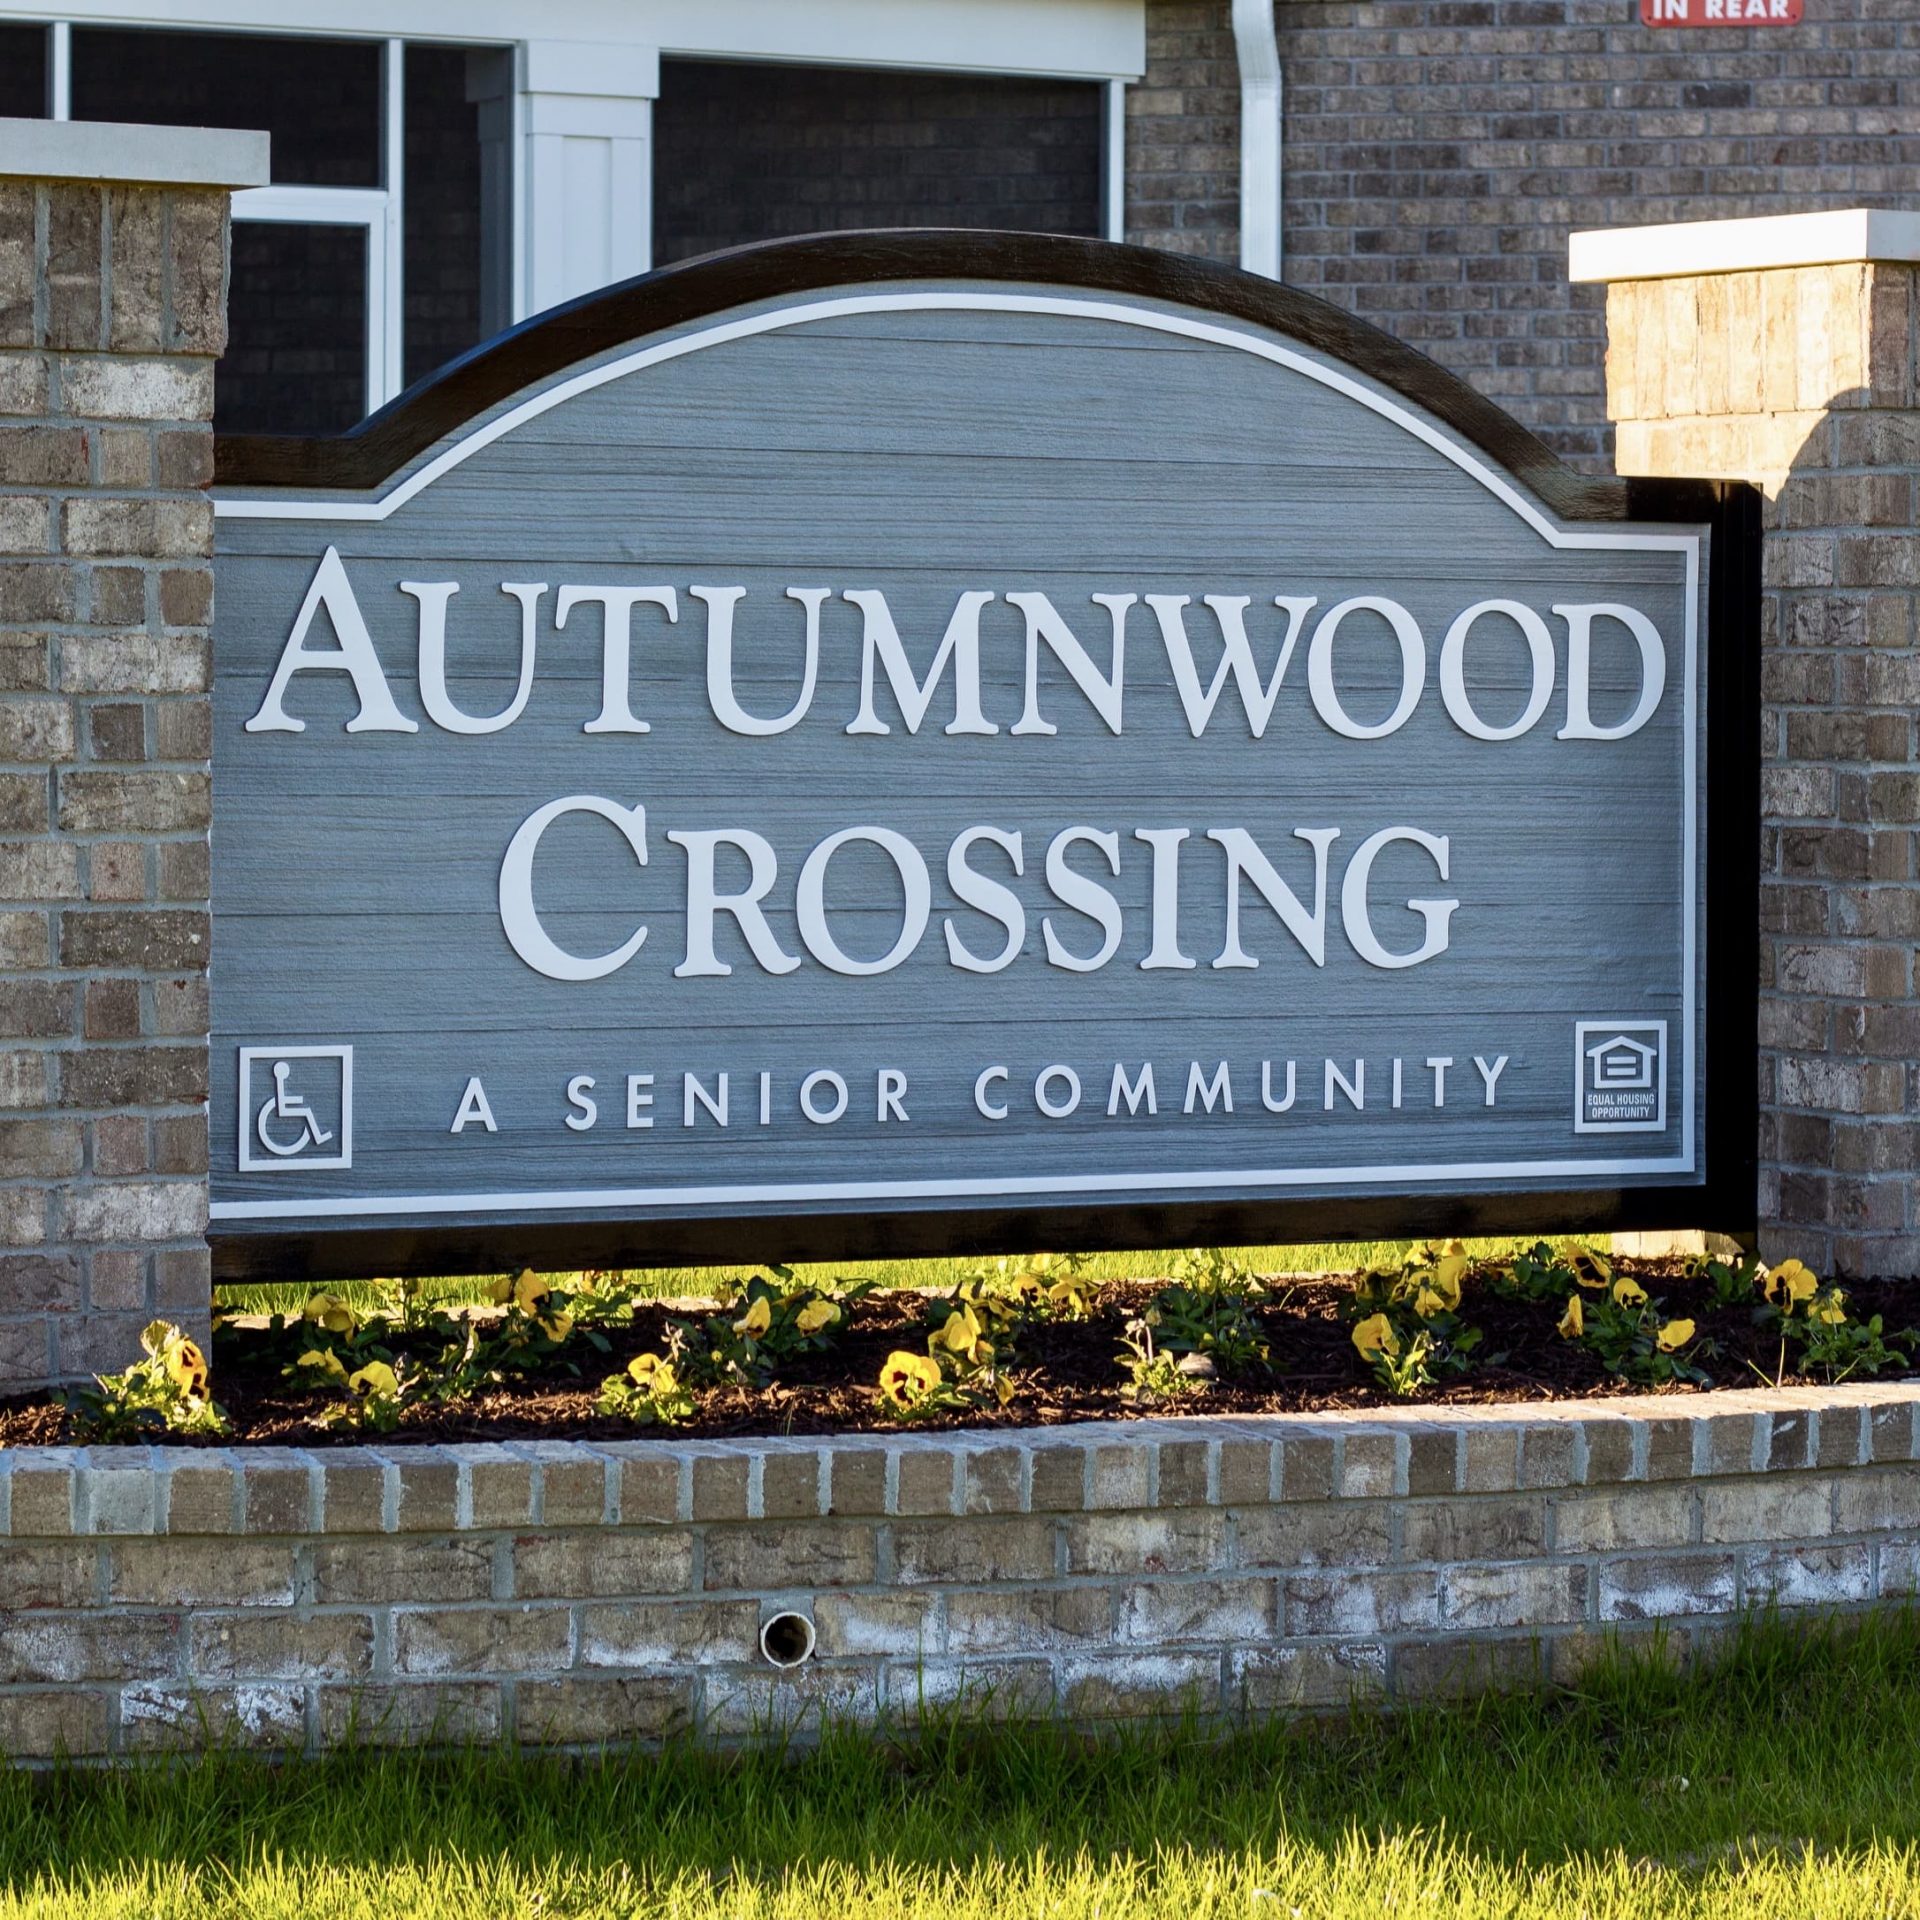 Autumnwood Crossing